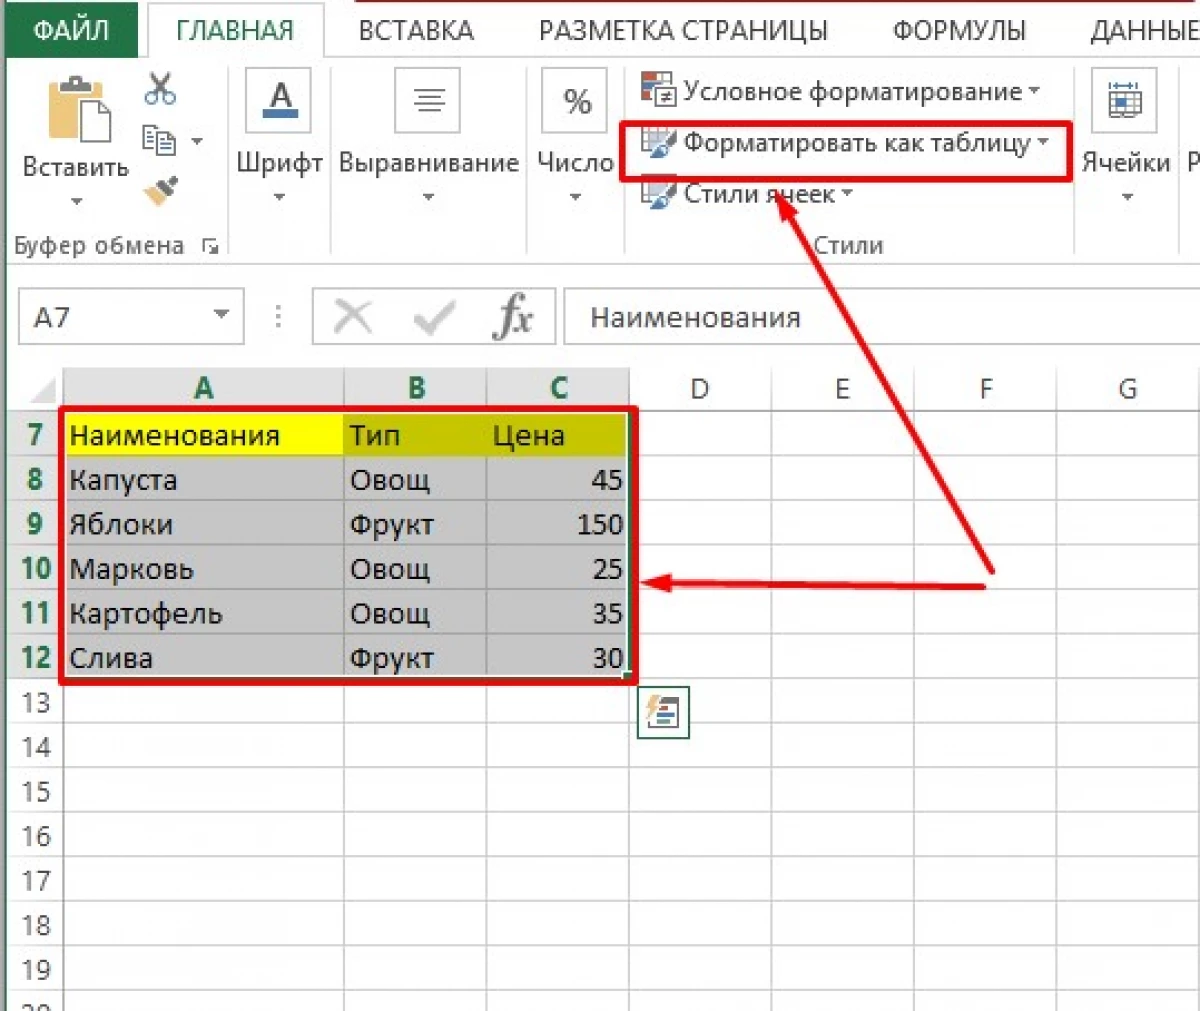 Excel માં ફિલ્ટર કેવી રીતે દૂર કરવું 15035_2